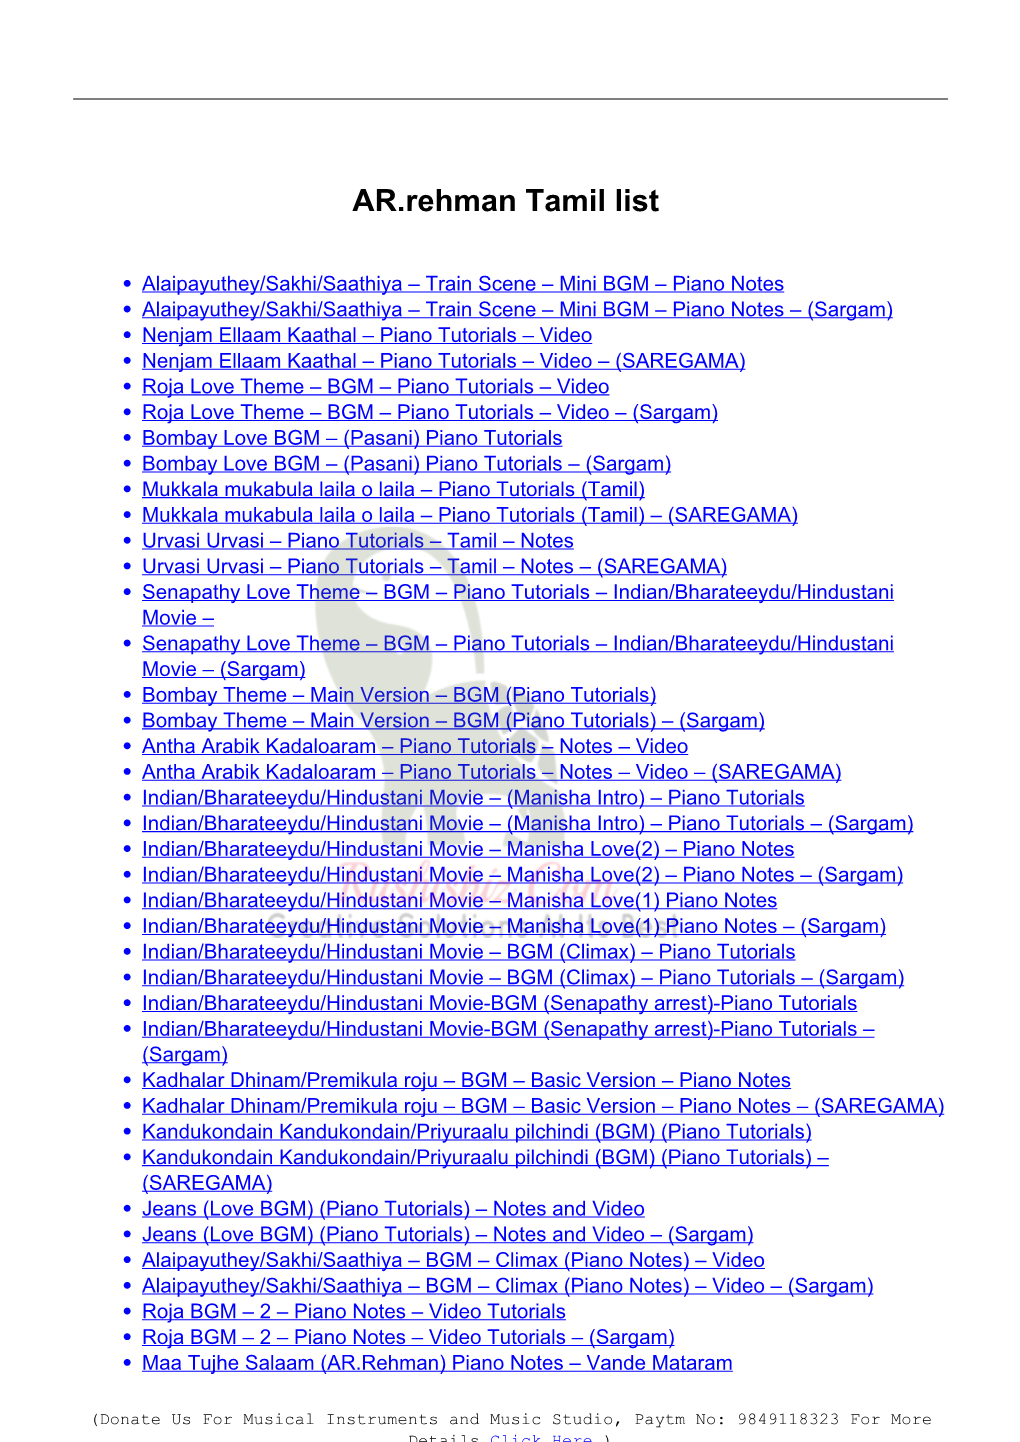 AR.Rehman Tamil List